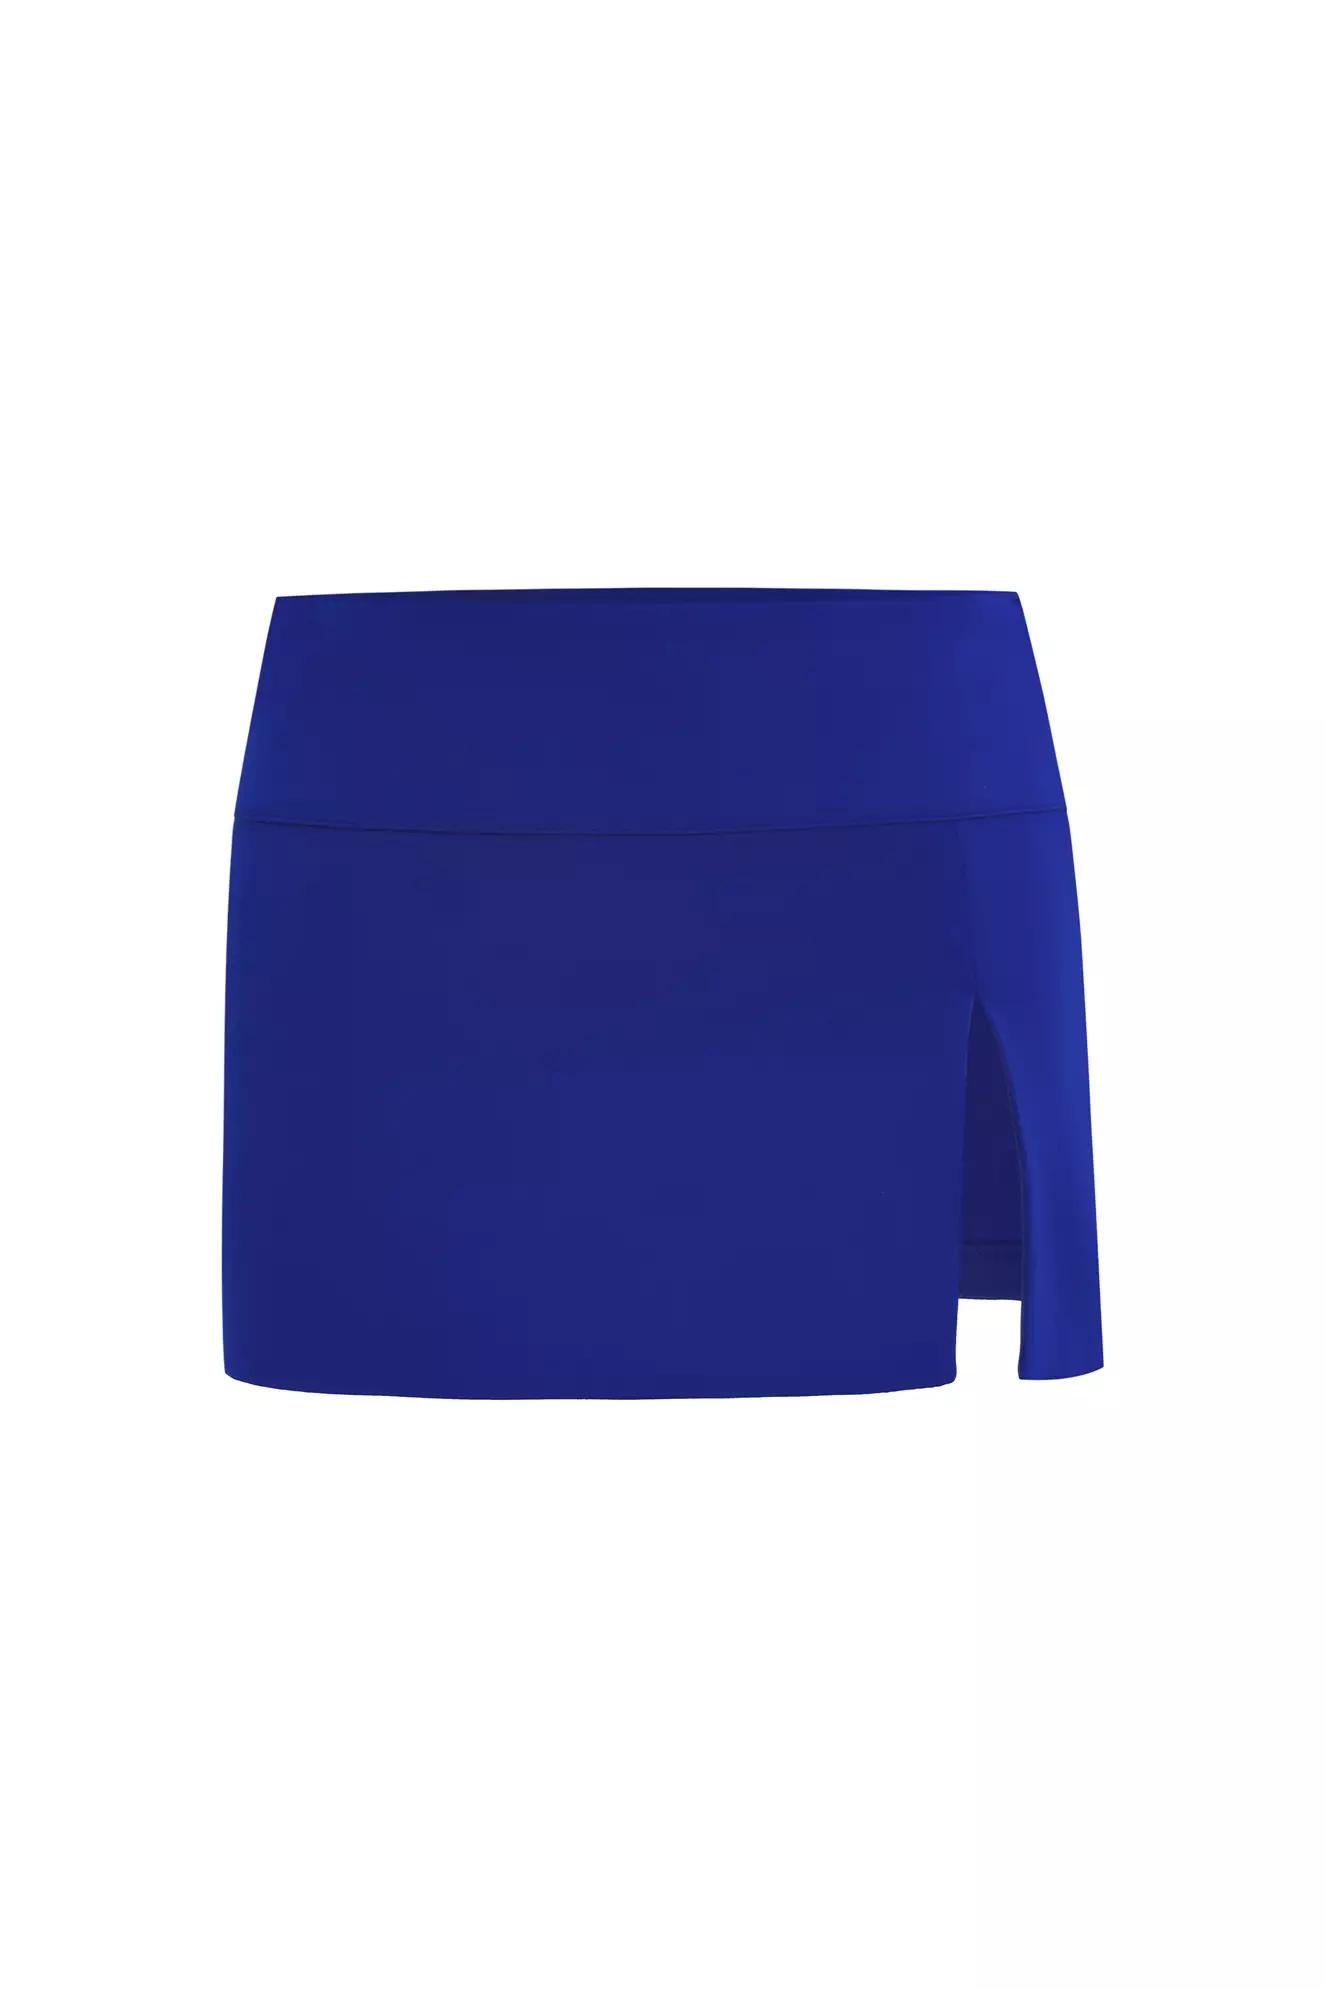 Blue crepe mini skirt